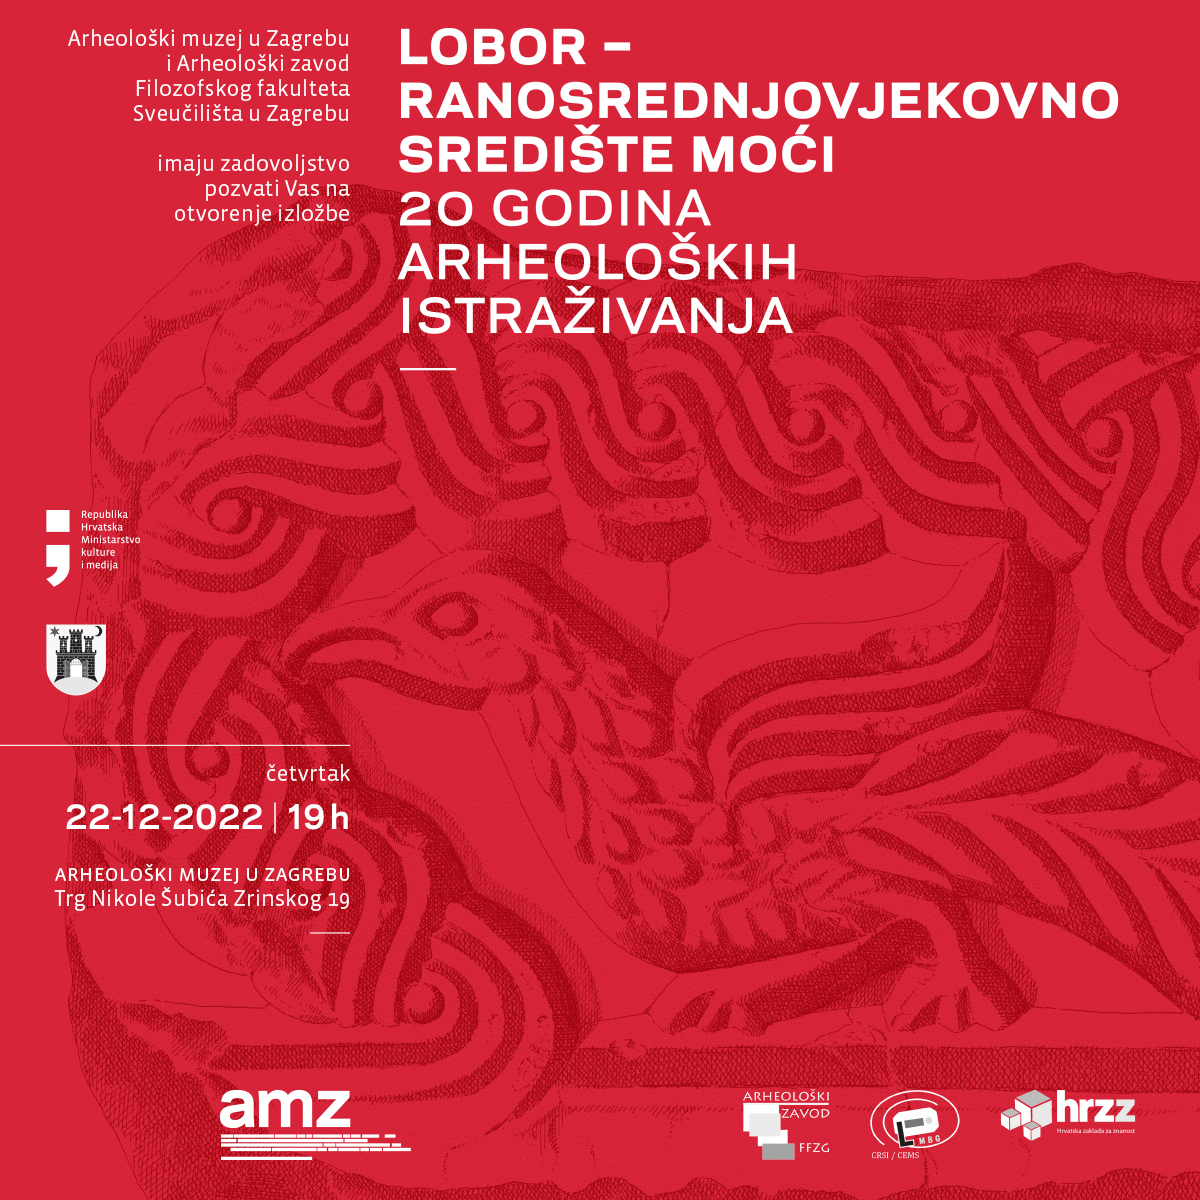 Otvorenje izložbe Lobor – ranosrednjovjekovno središte moći, 20 godina arheoloških istraživanja